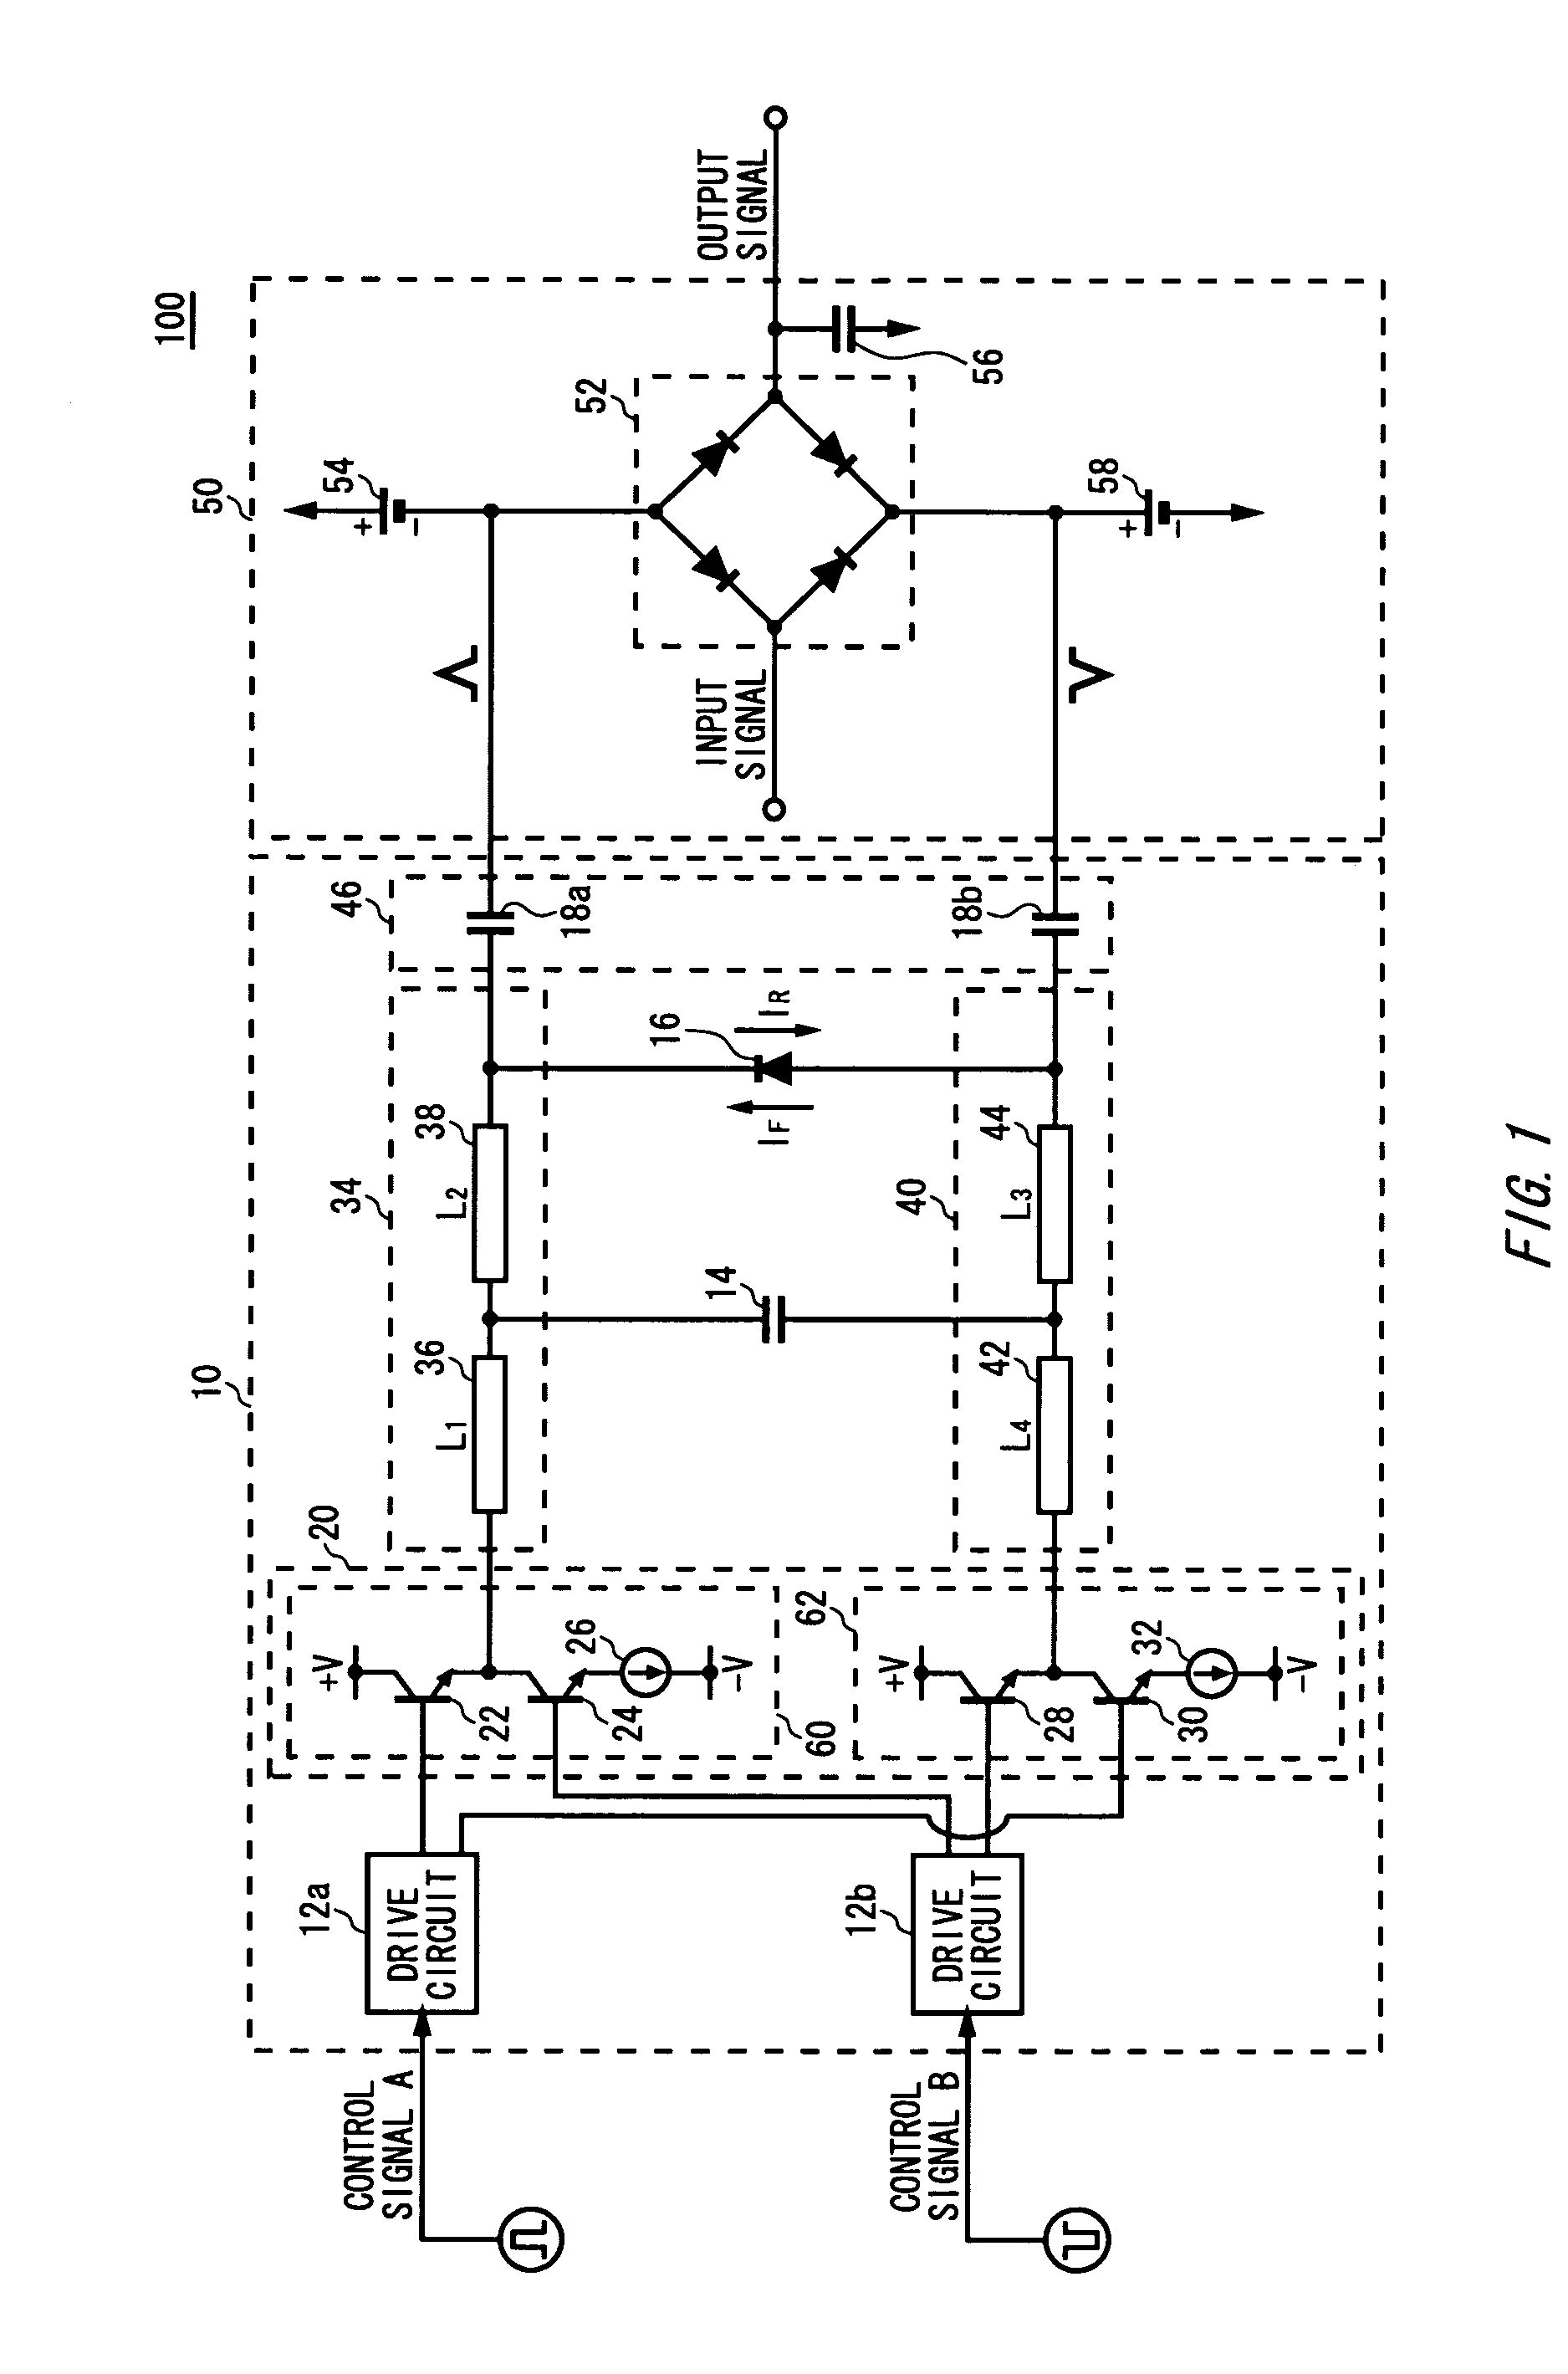 Pulse generating circuit and sampling circuit